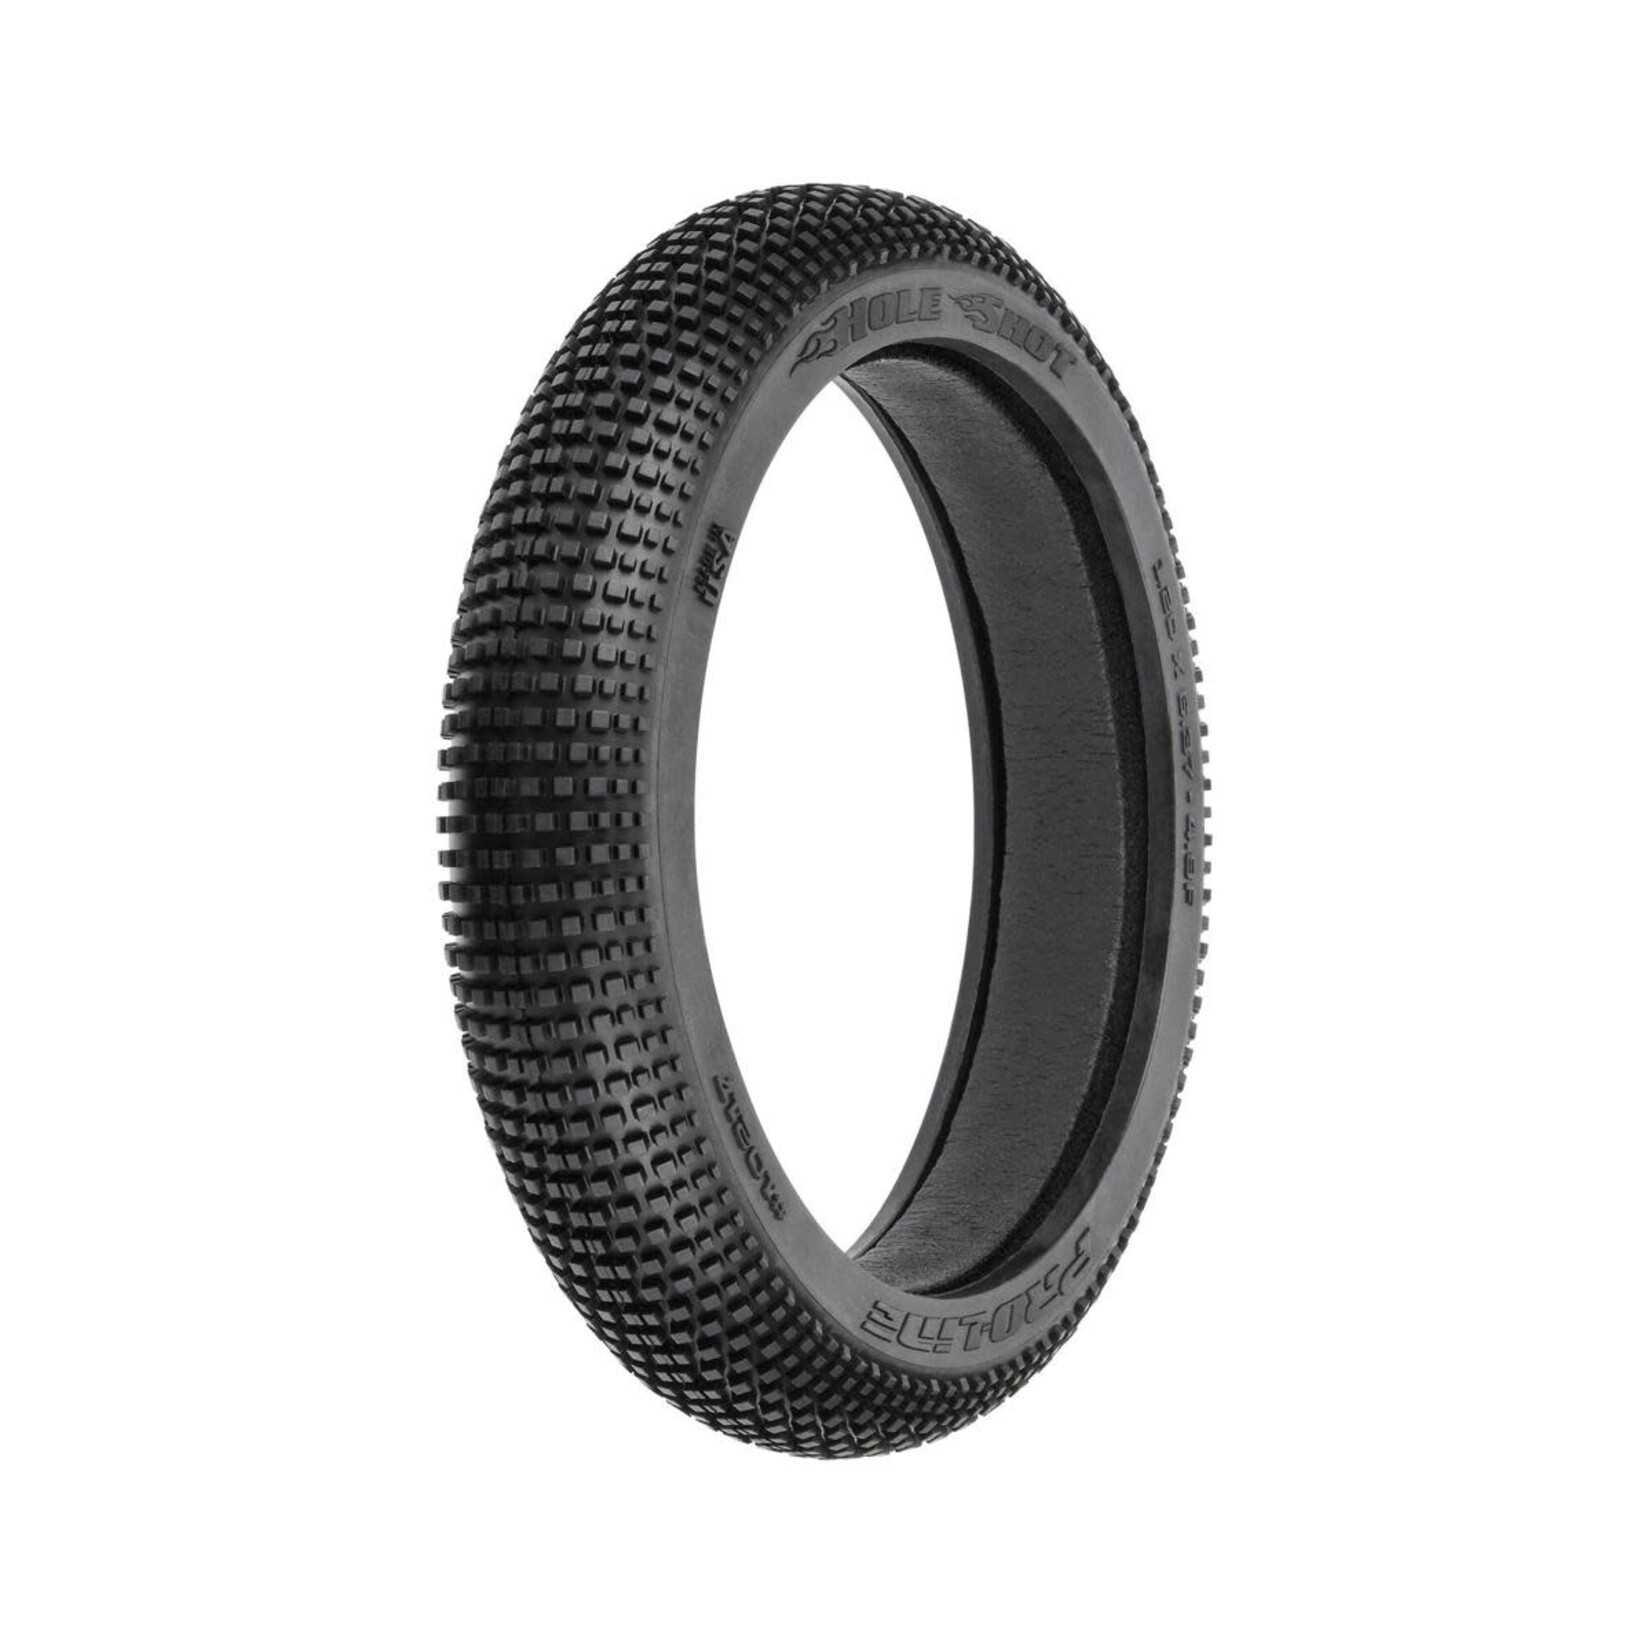 Pro-Line Pro-Line 1/4 Hole Shot Motocross Front Tire (1) (M3) #10217-02